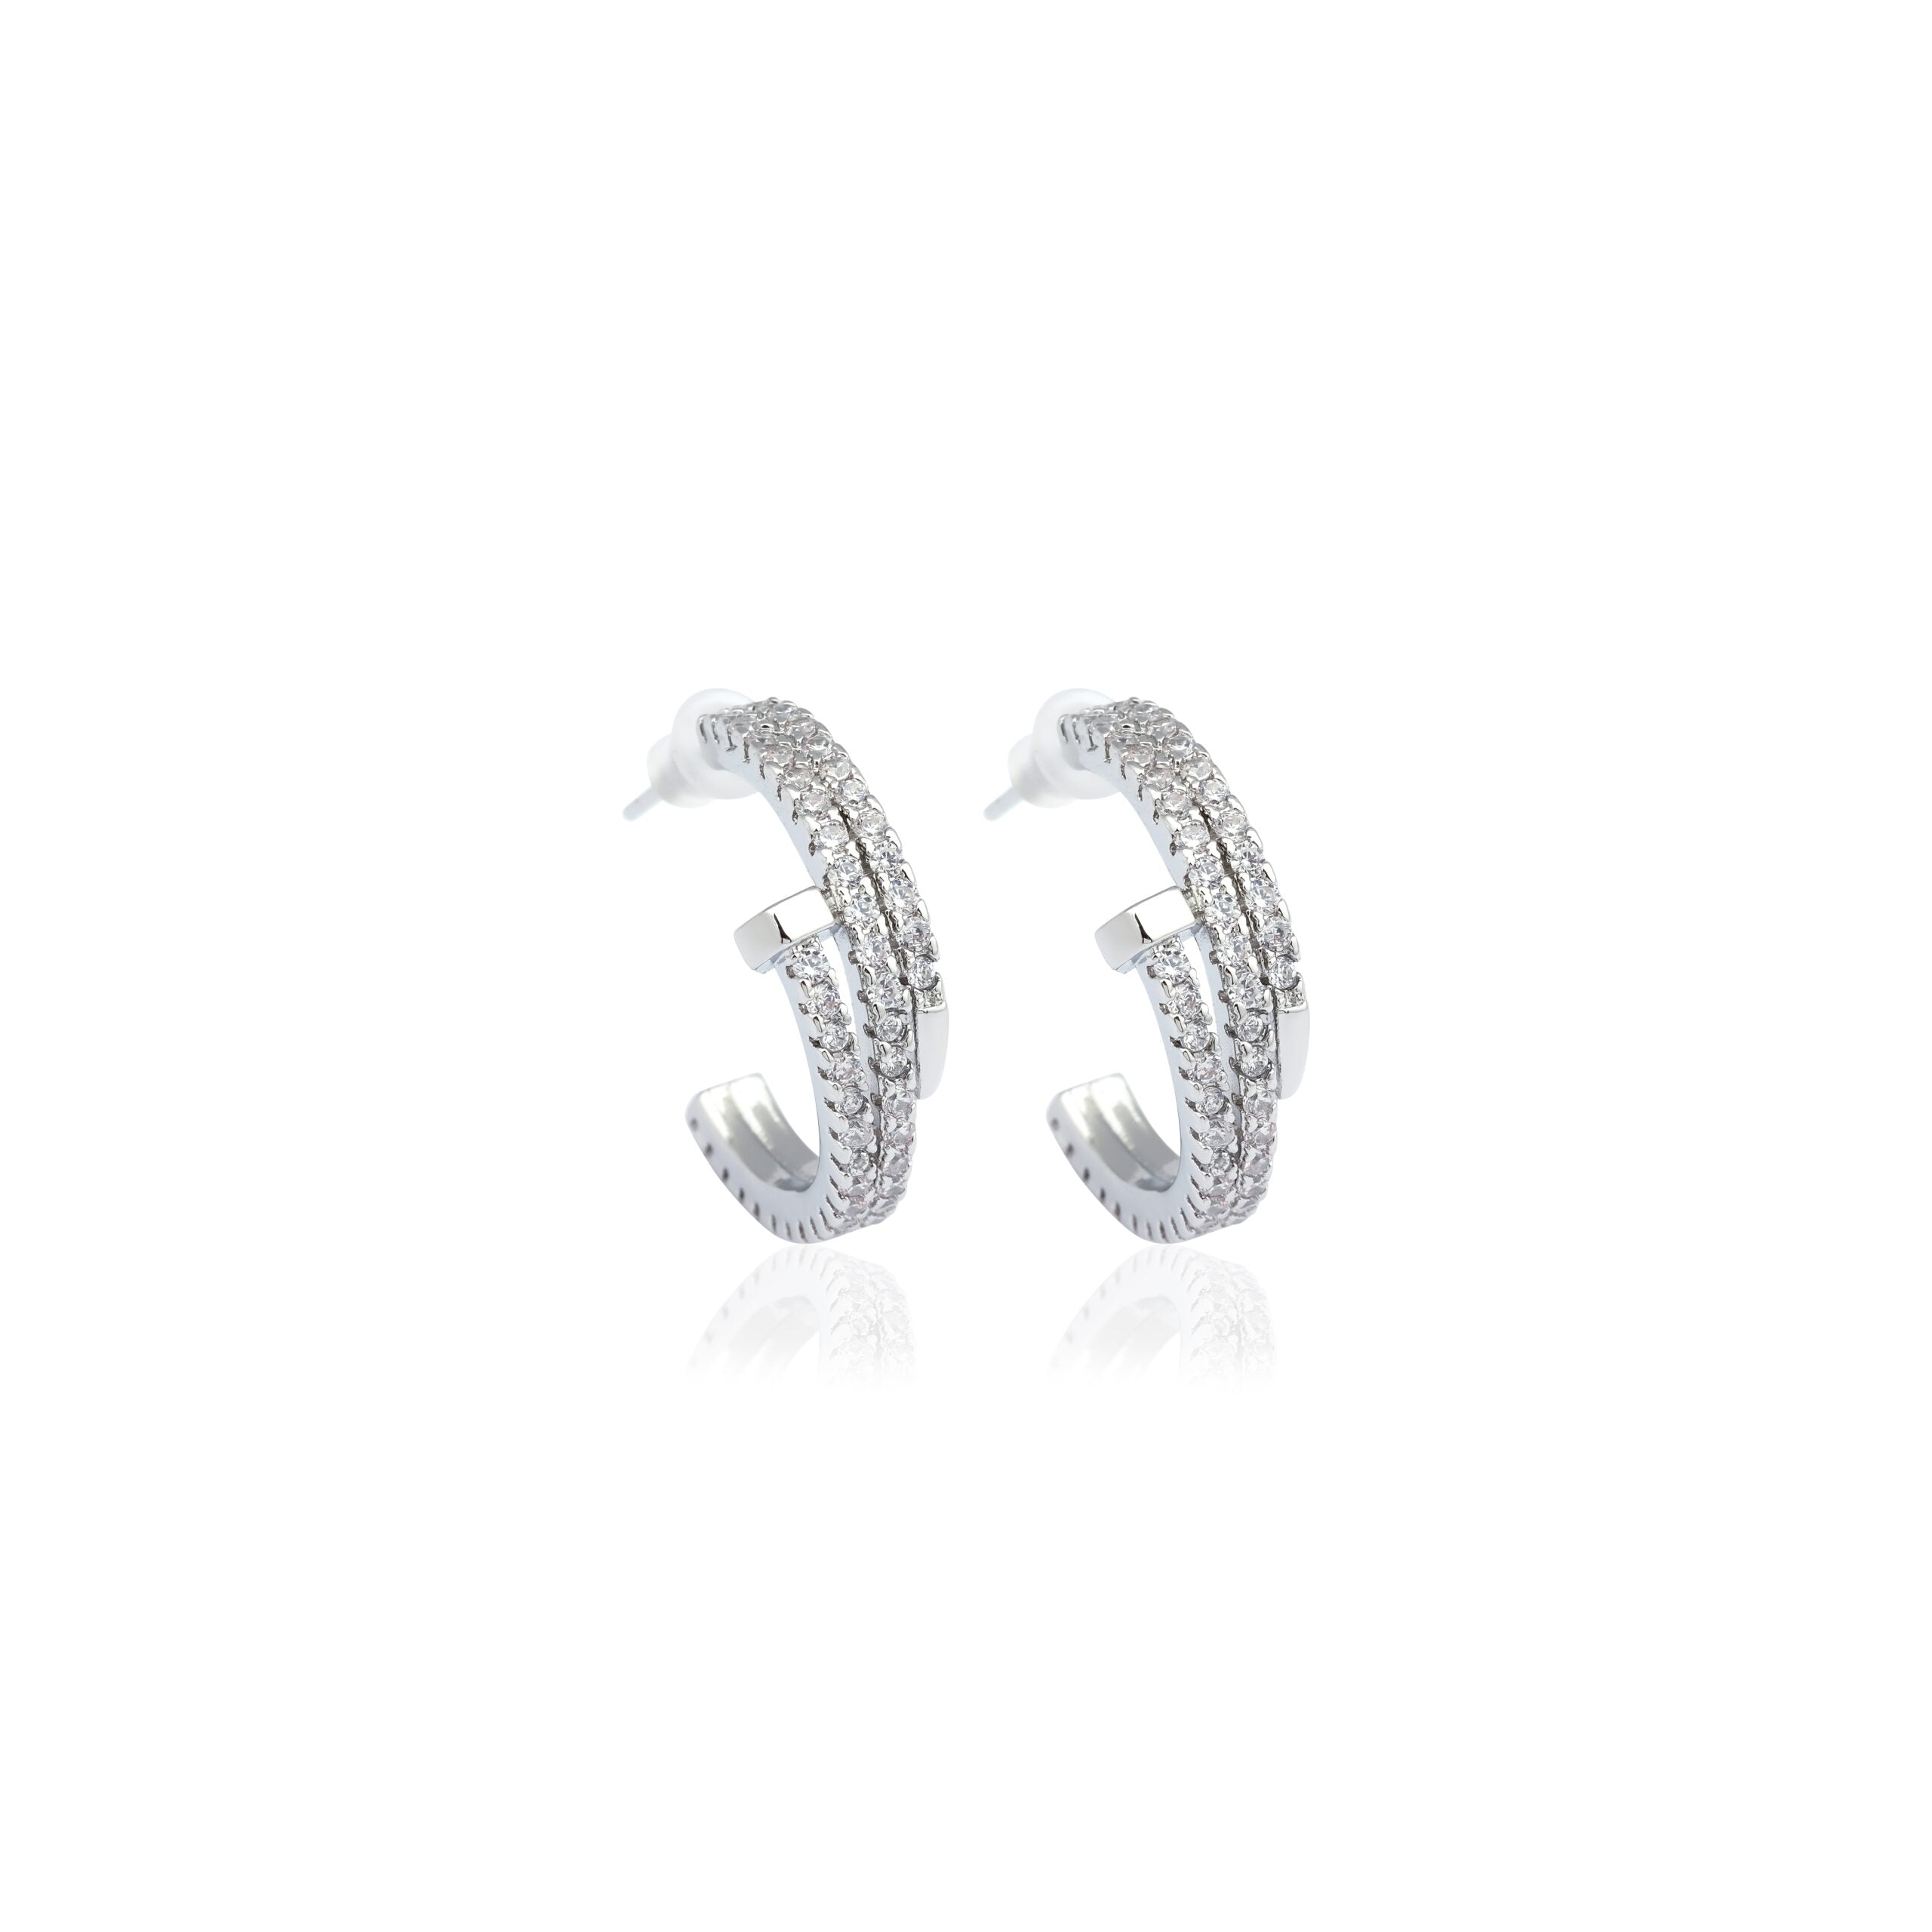 Cristal Nail hoop earrings